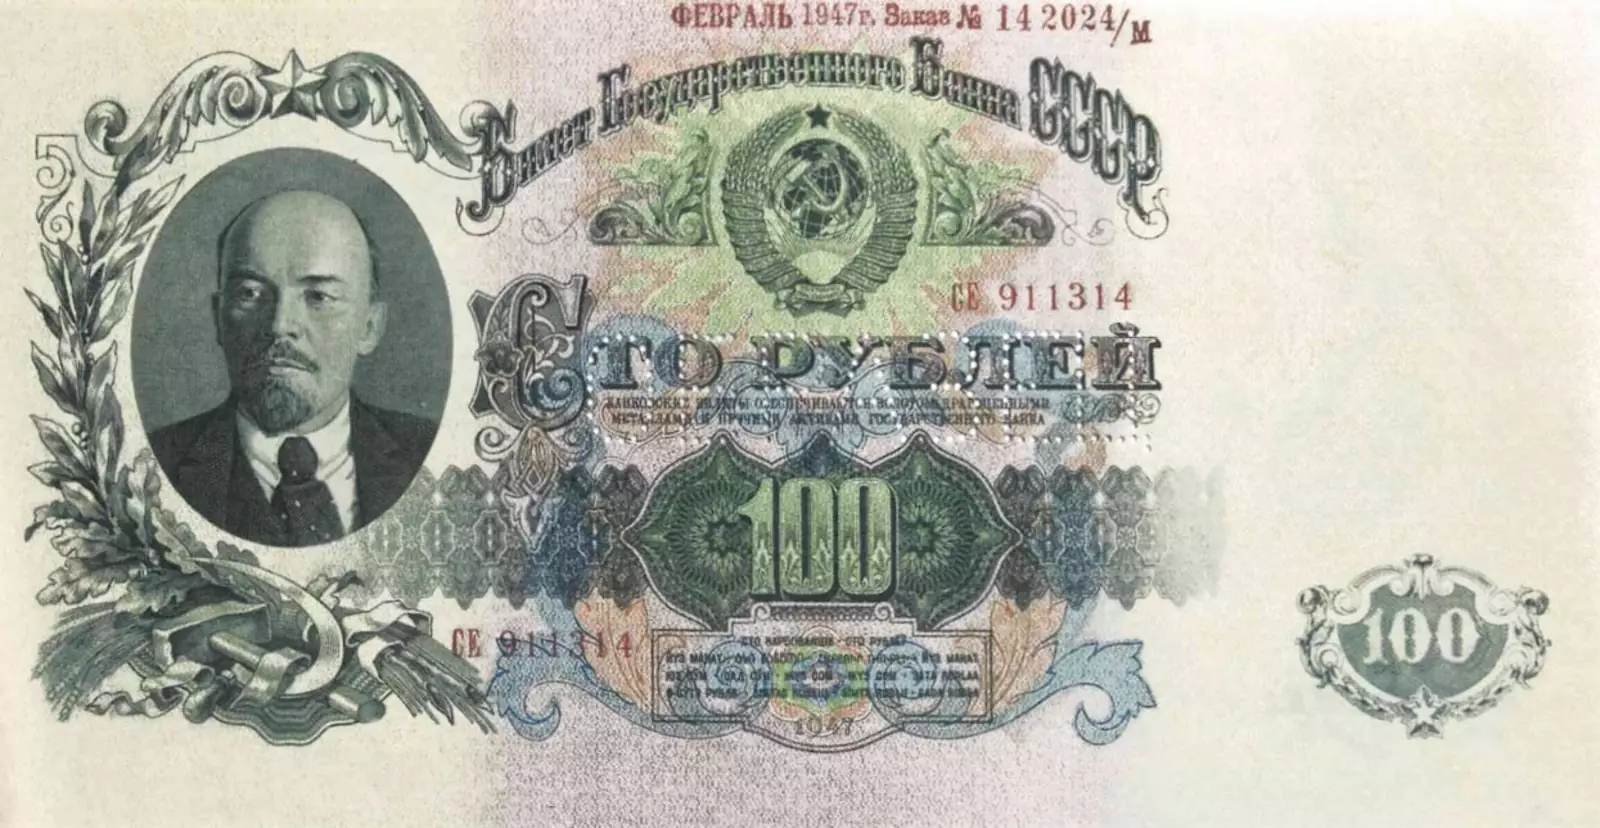 100 рублей образца 1947 года.Из фондов ФГУП «Гознак»